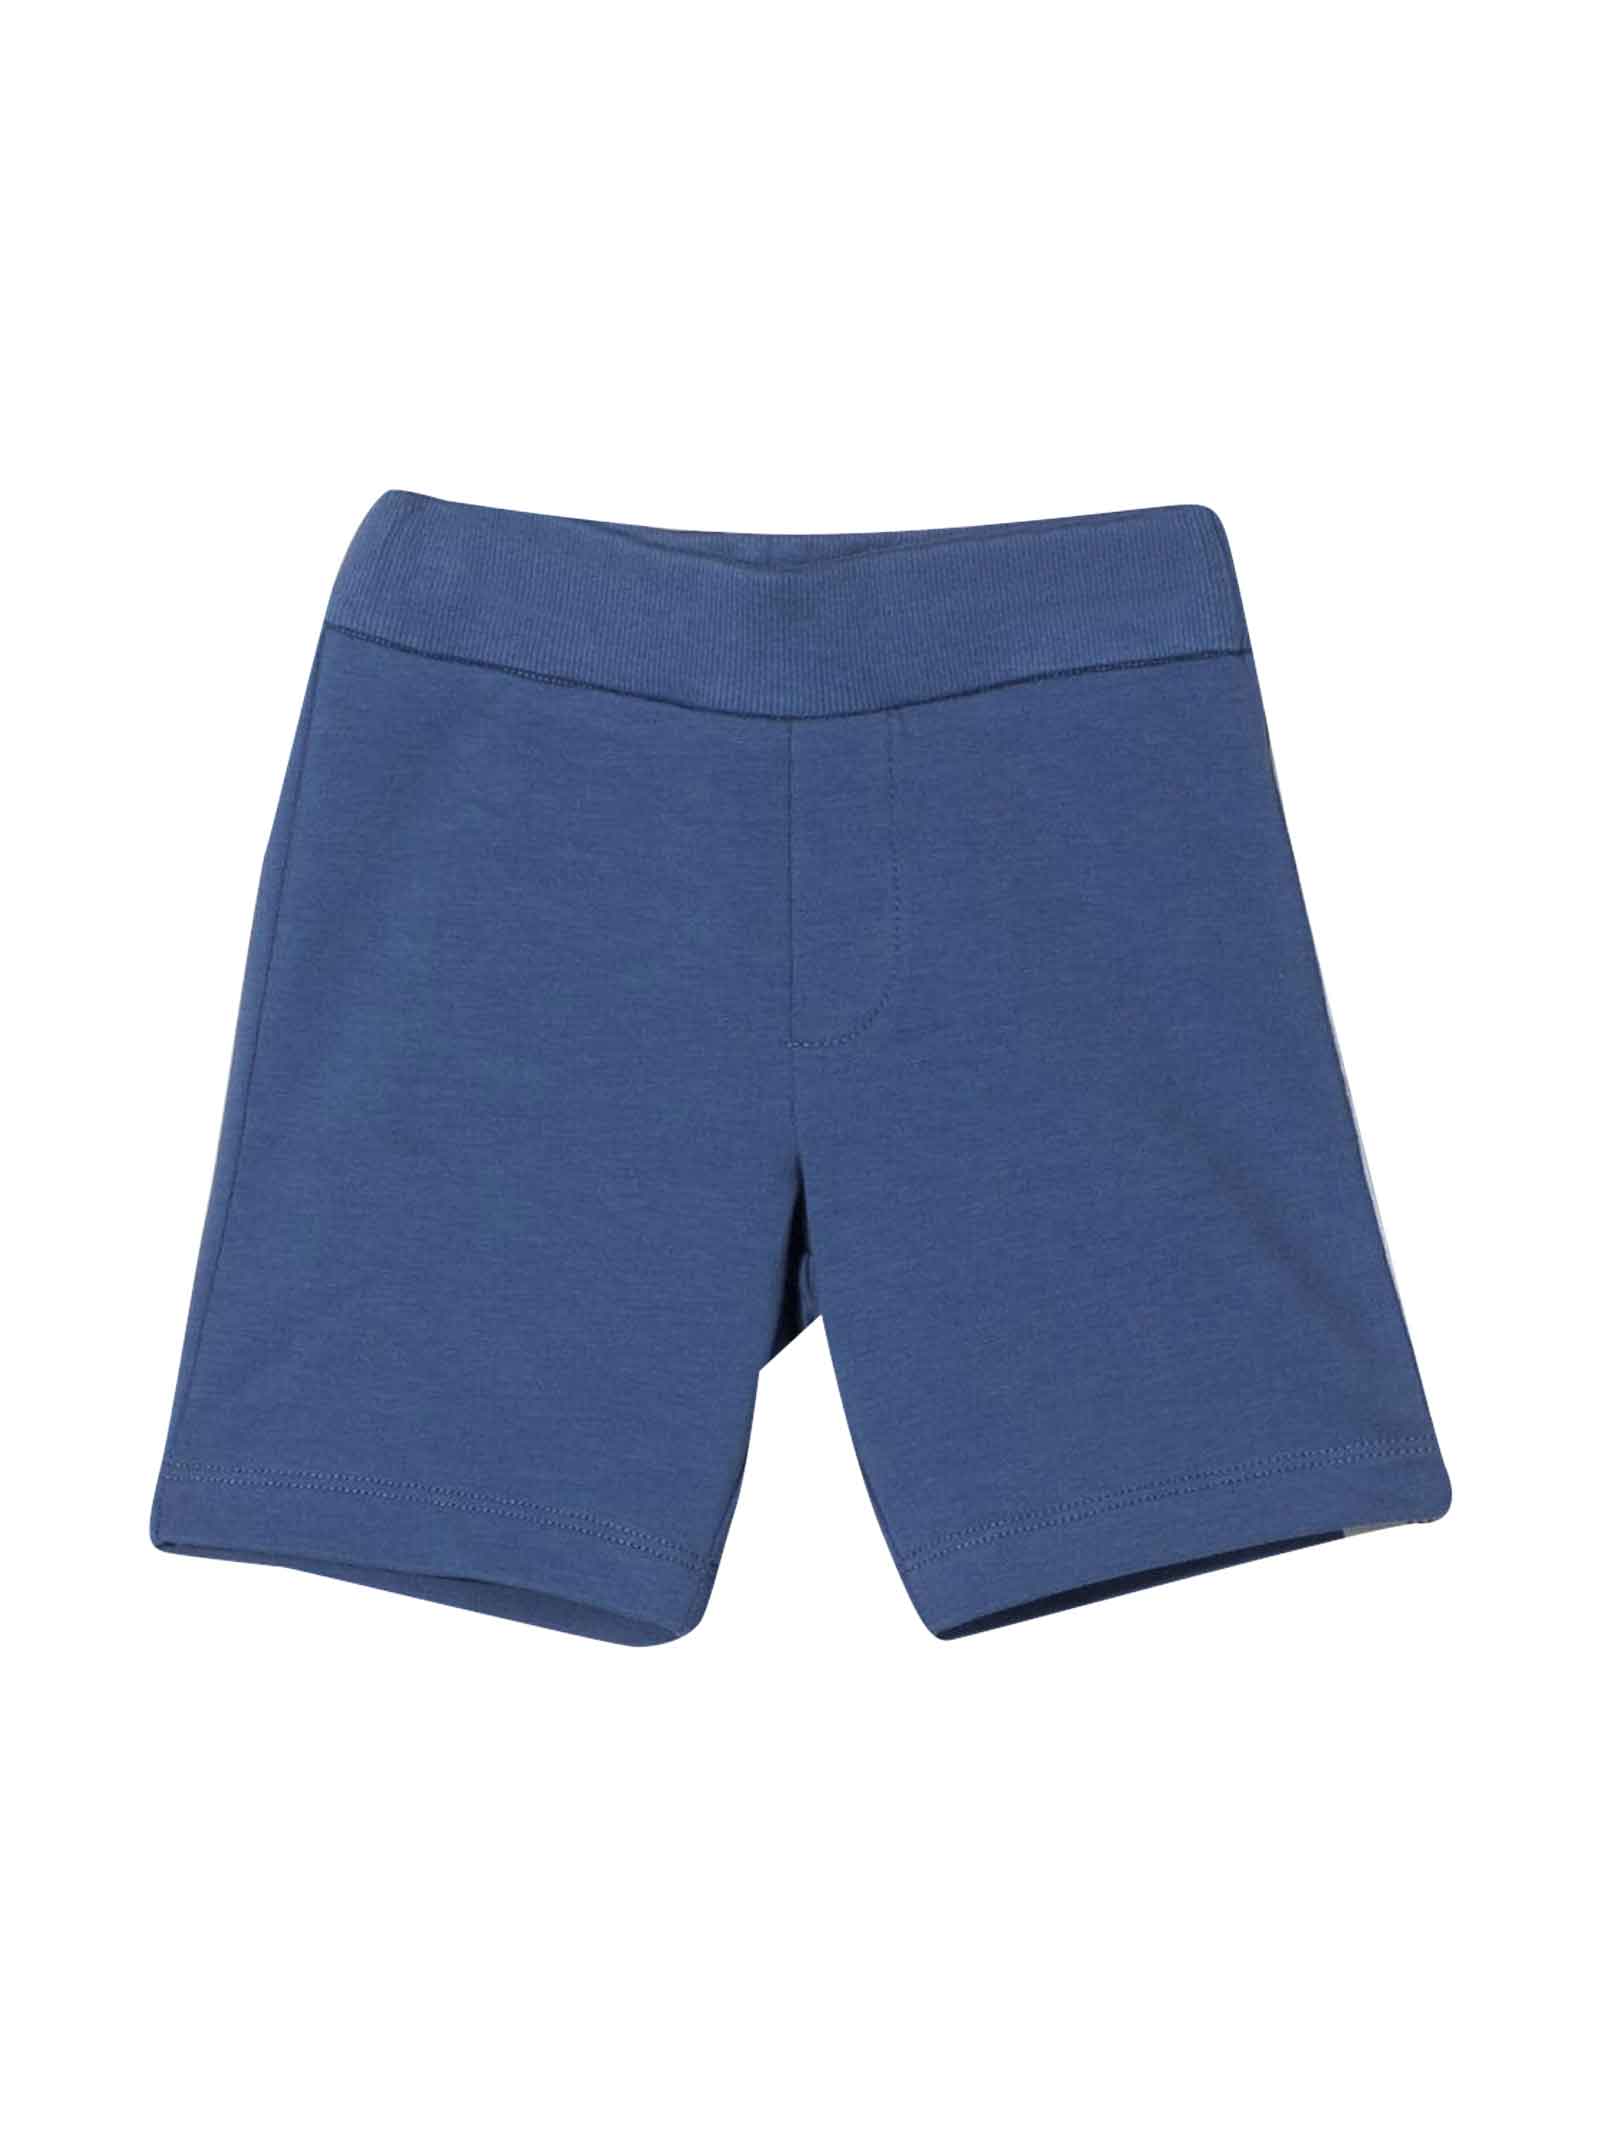 Emporio Armani Baby Blue Shorts